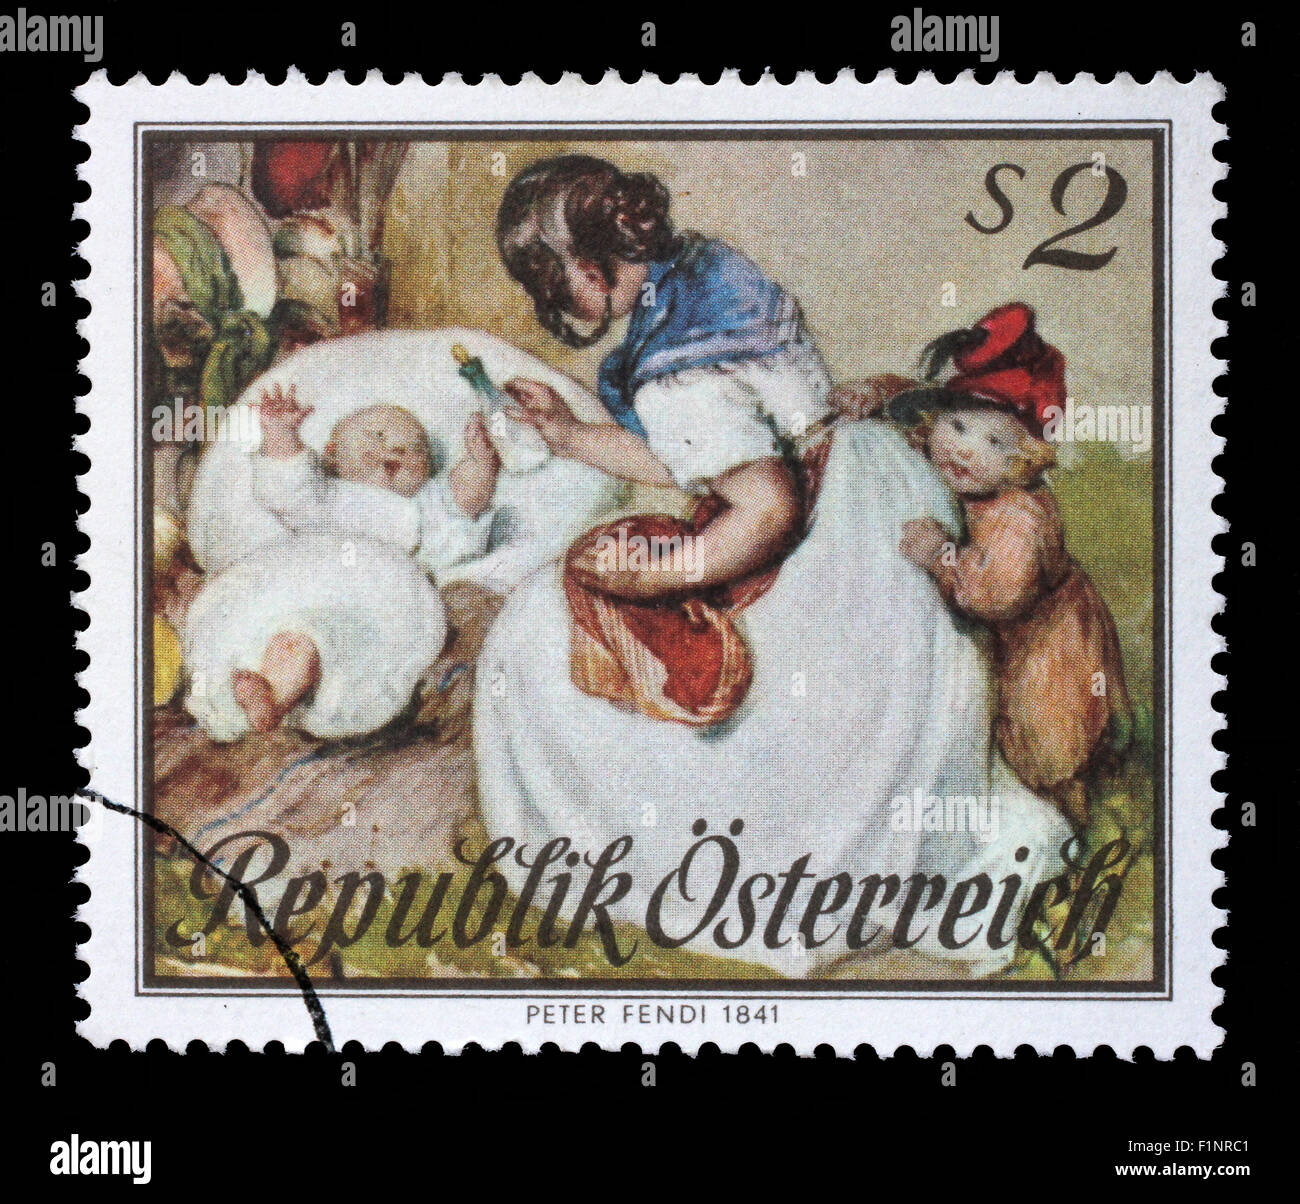 Timbres par l'Autriche, montre la maternité, Aquarelle de Peter Fendi, circa 1967 Banque D'Images